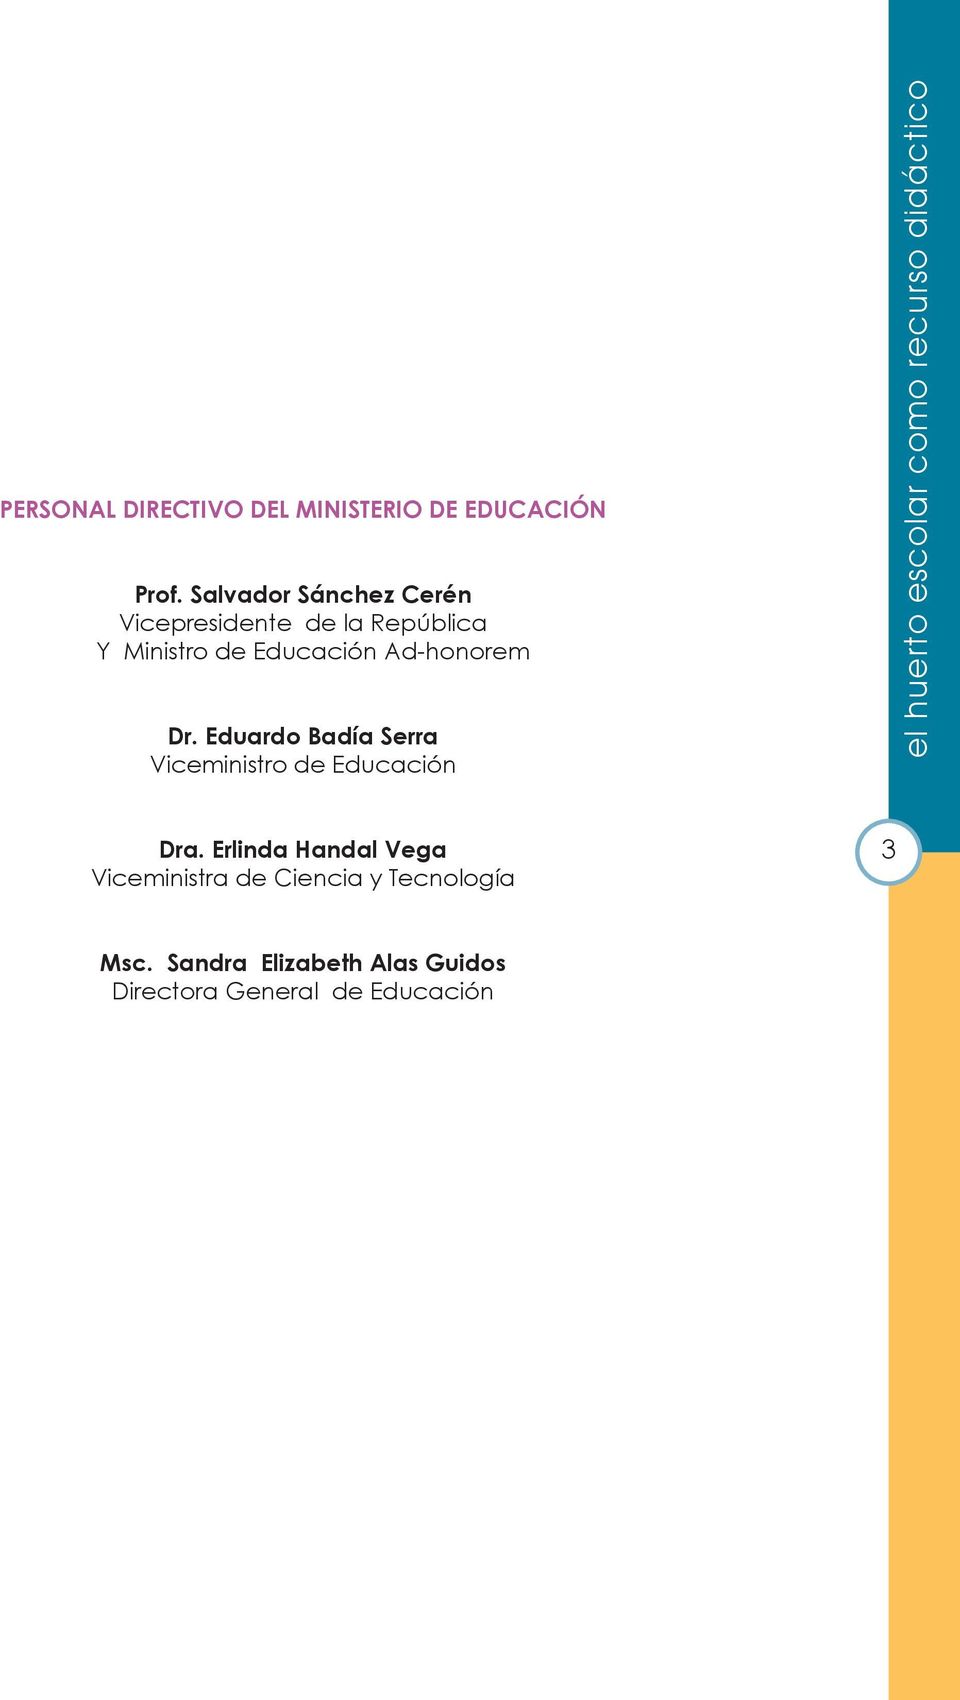 Dr. Eduardo Badía Serra Viceministro de Educación el huerto escolar como recurso didáctico